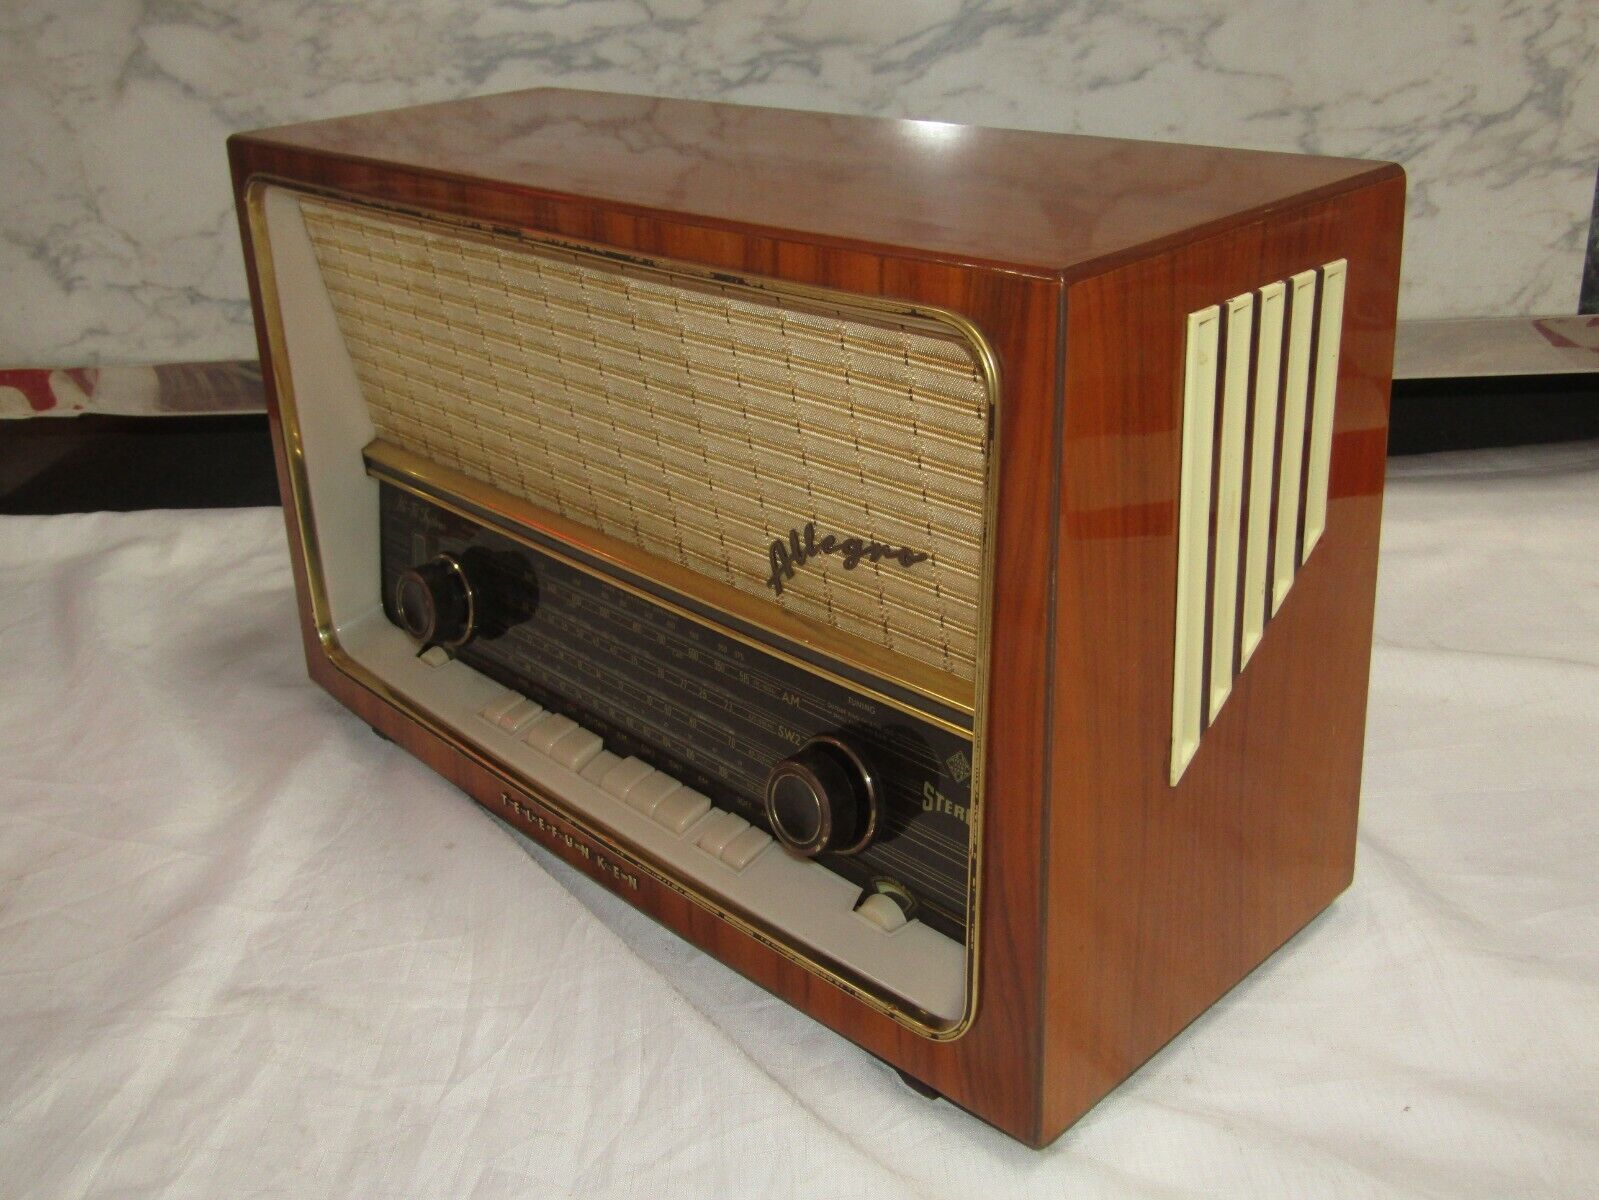 Misverstand Intentie satire 1950-60s Vintage Telefunken 5183 W Allegro HI-FI Radio | eBay